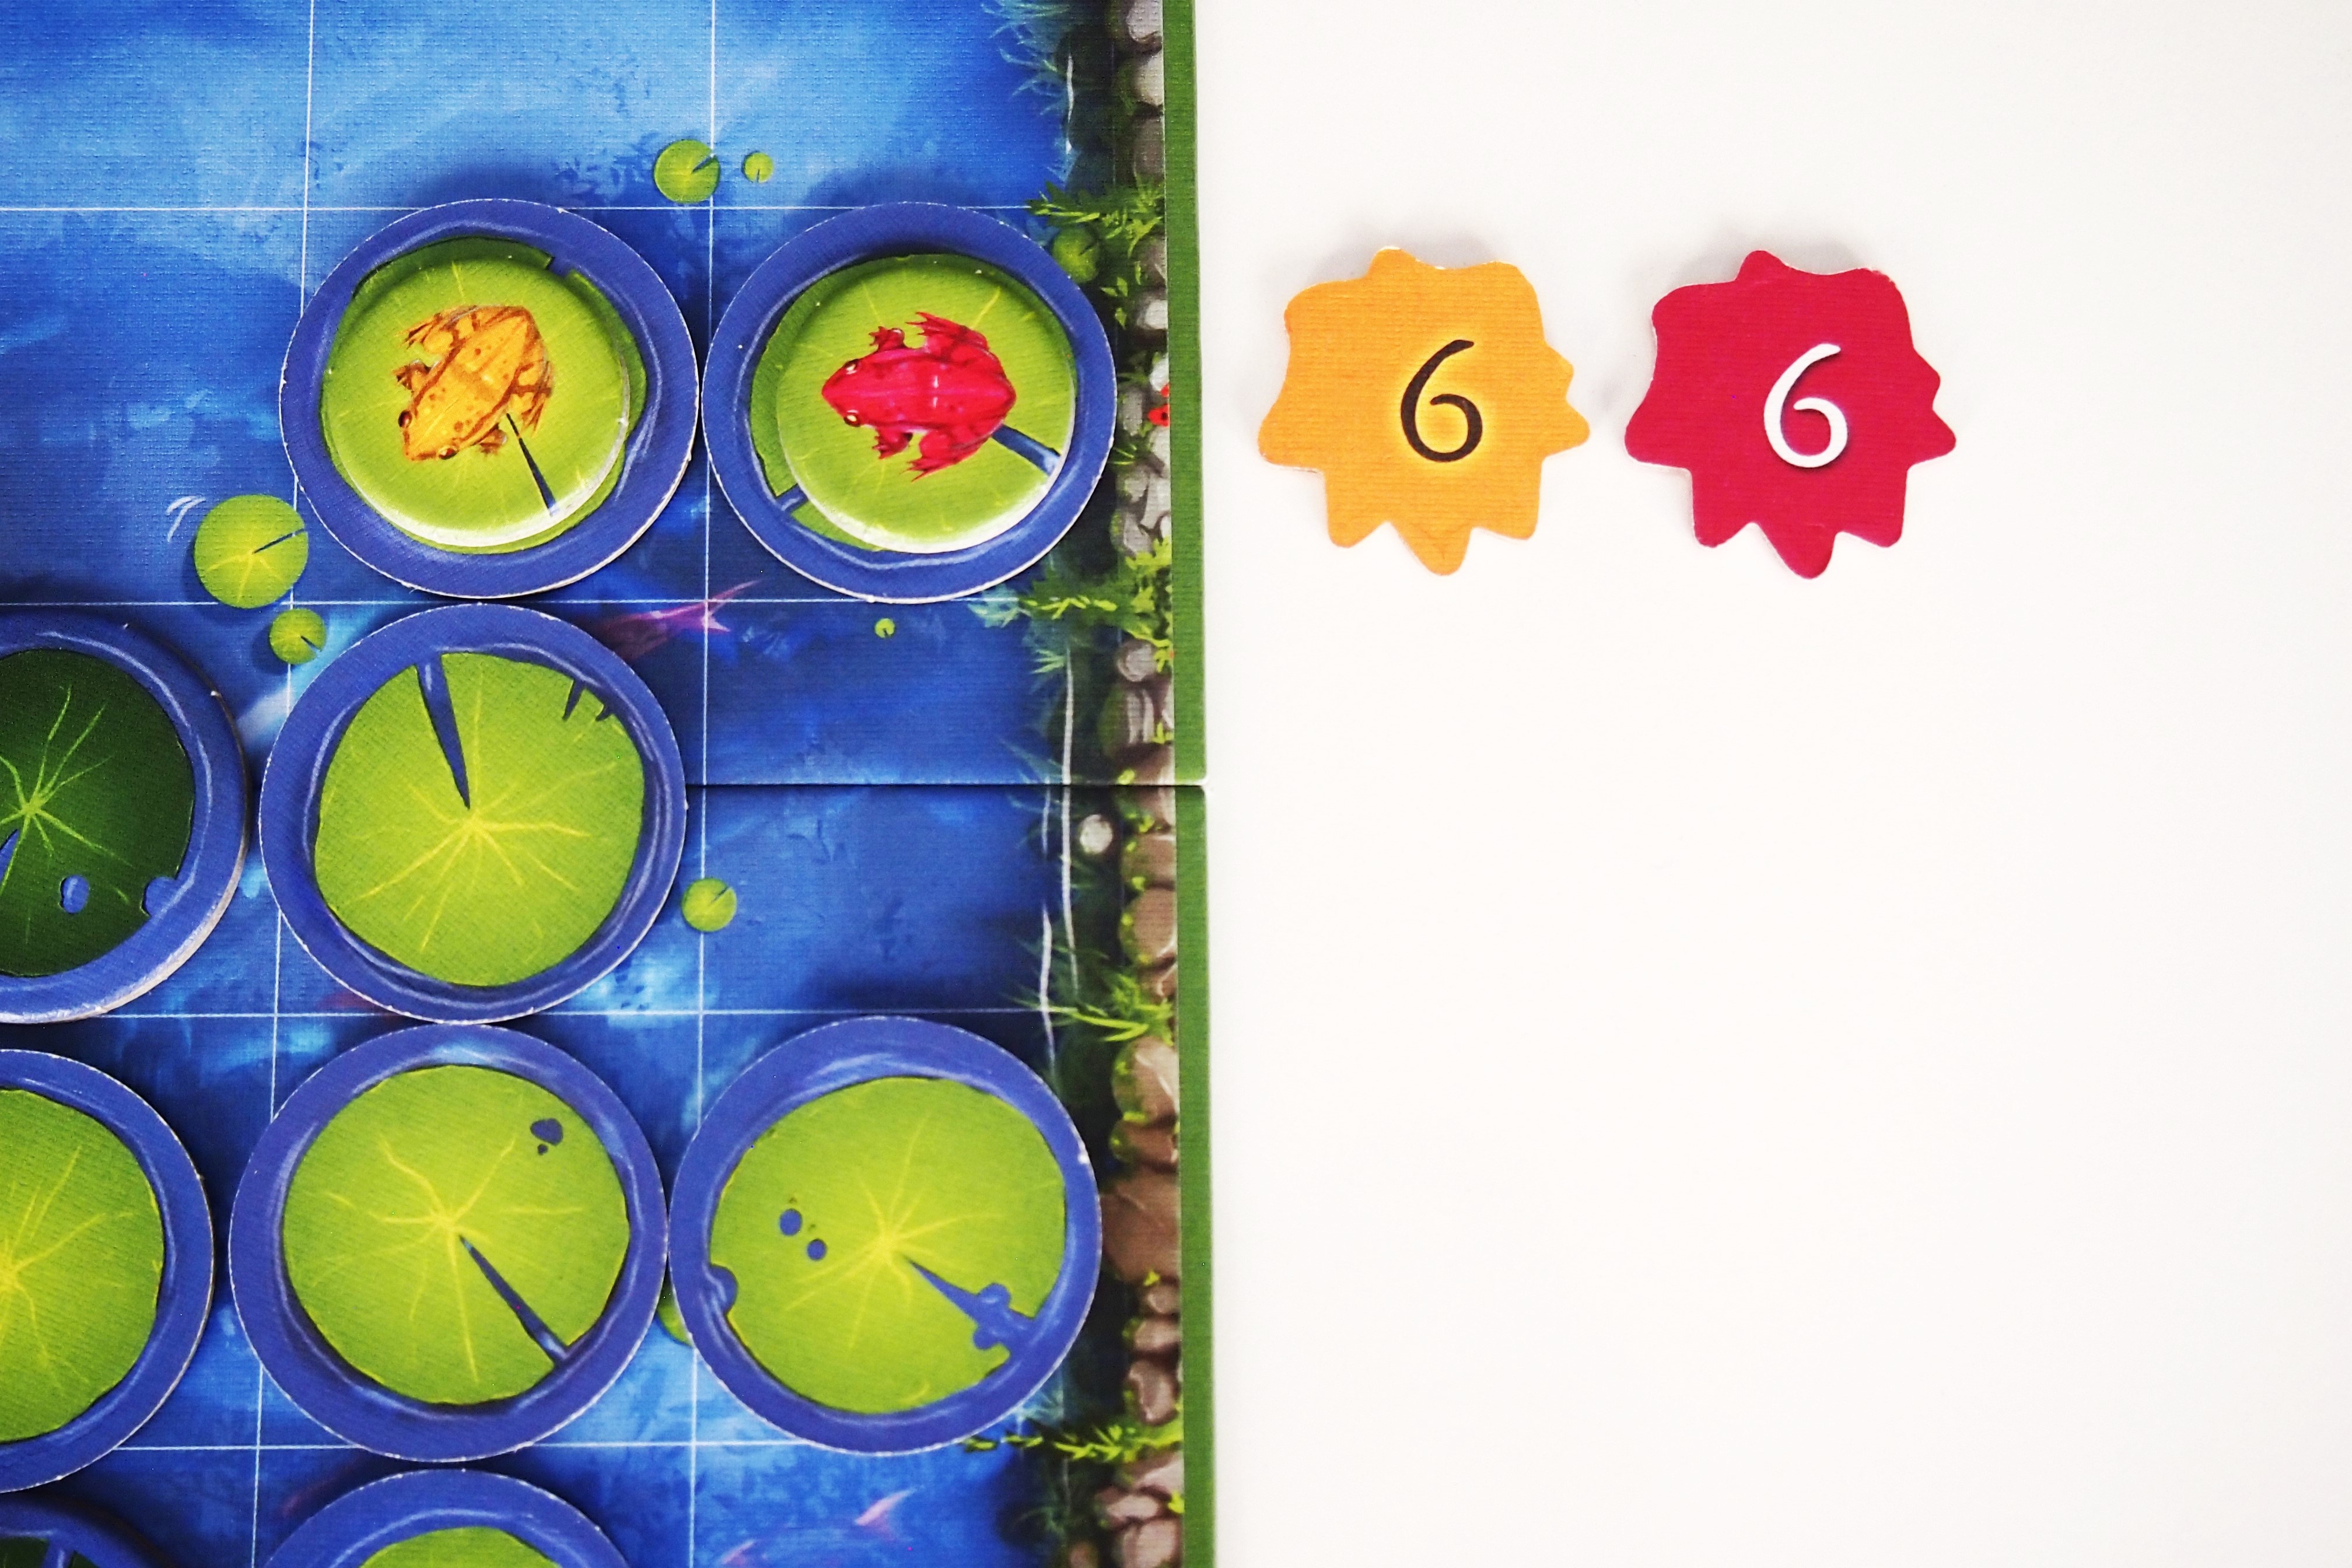 Las ranas entran en juego en caso de empate en la elección de la flor. Los jugadores la situarían sobre la rana de su color. 